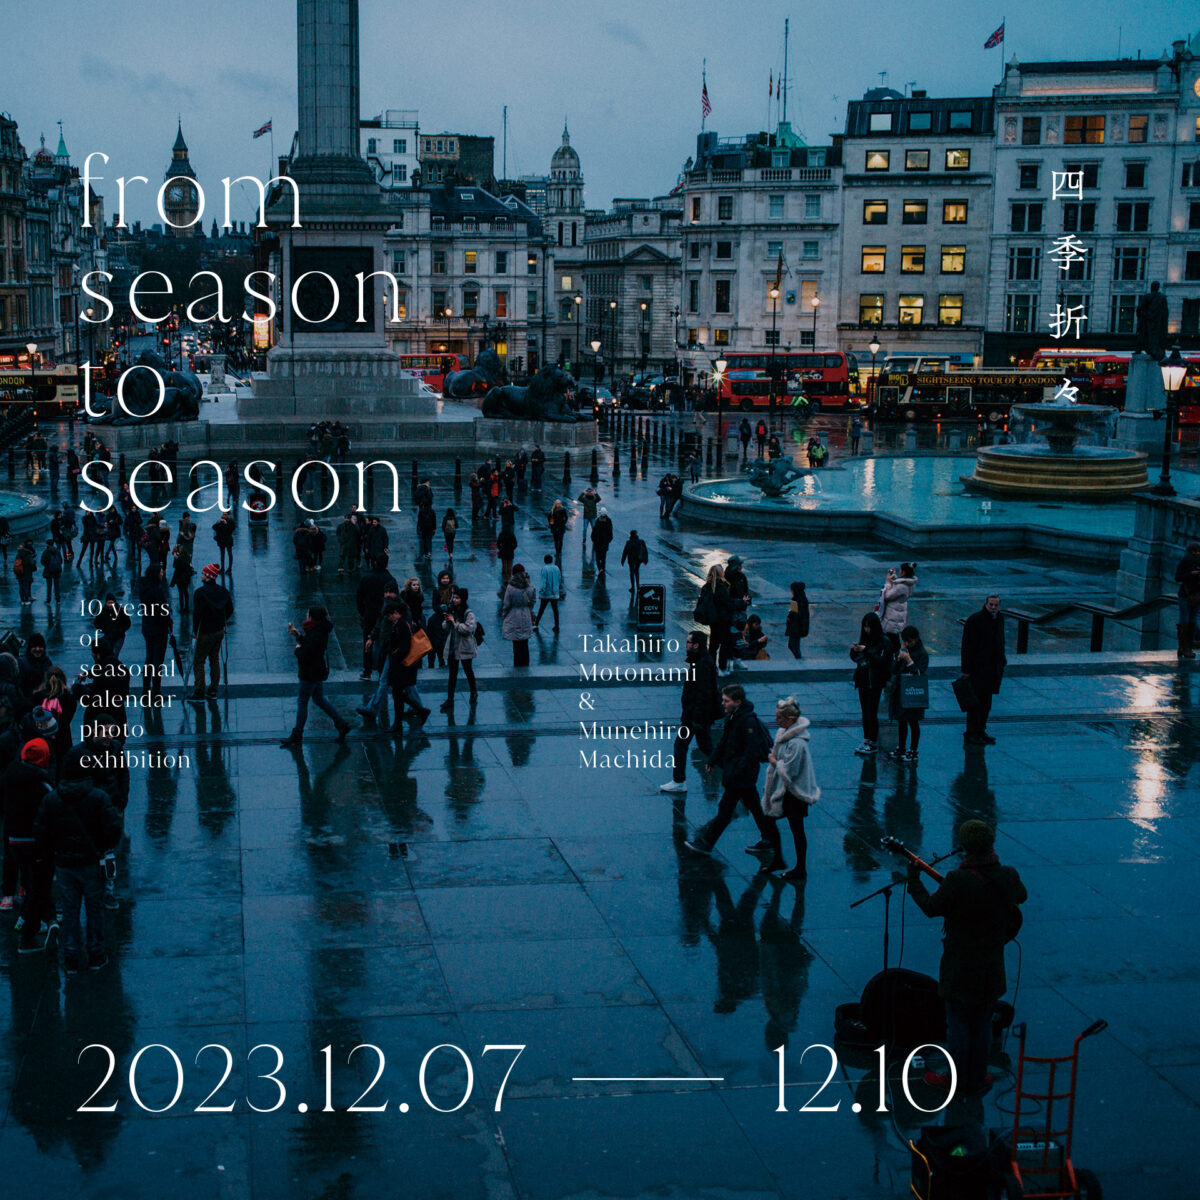 写真展「from season to season」が開催されます。